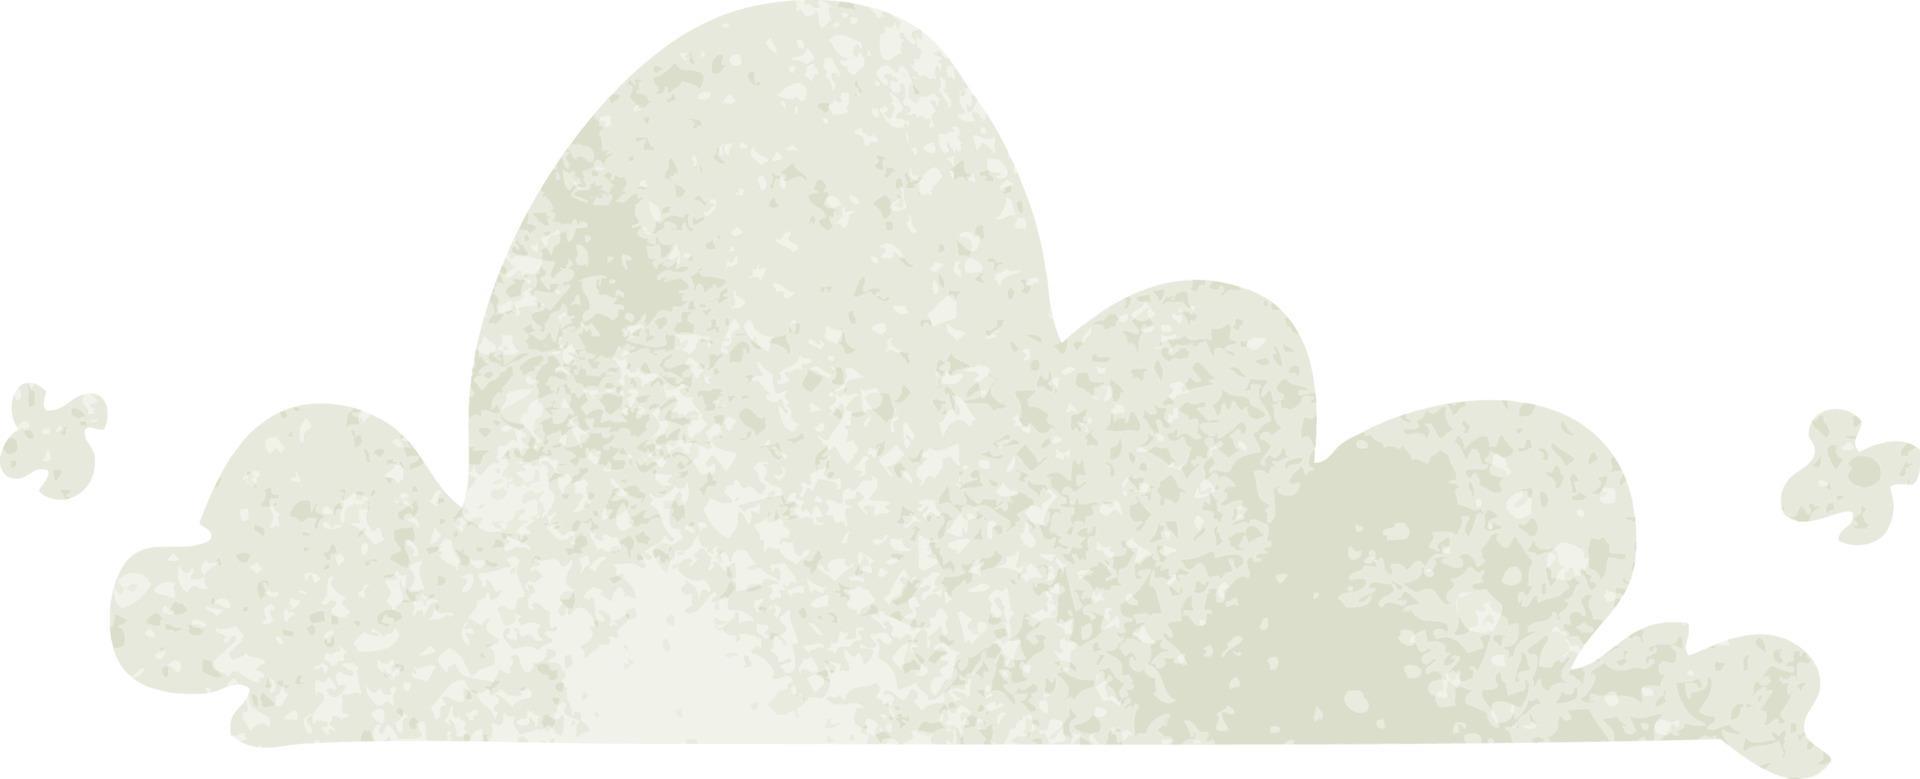 doodle retrò dei cartoni animati di una nuvola bianca vettore